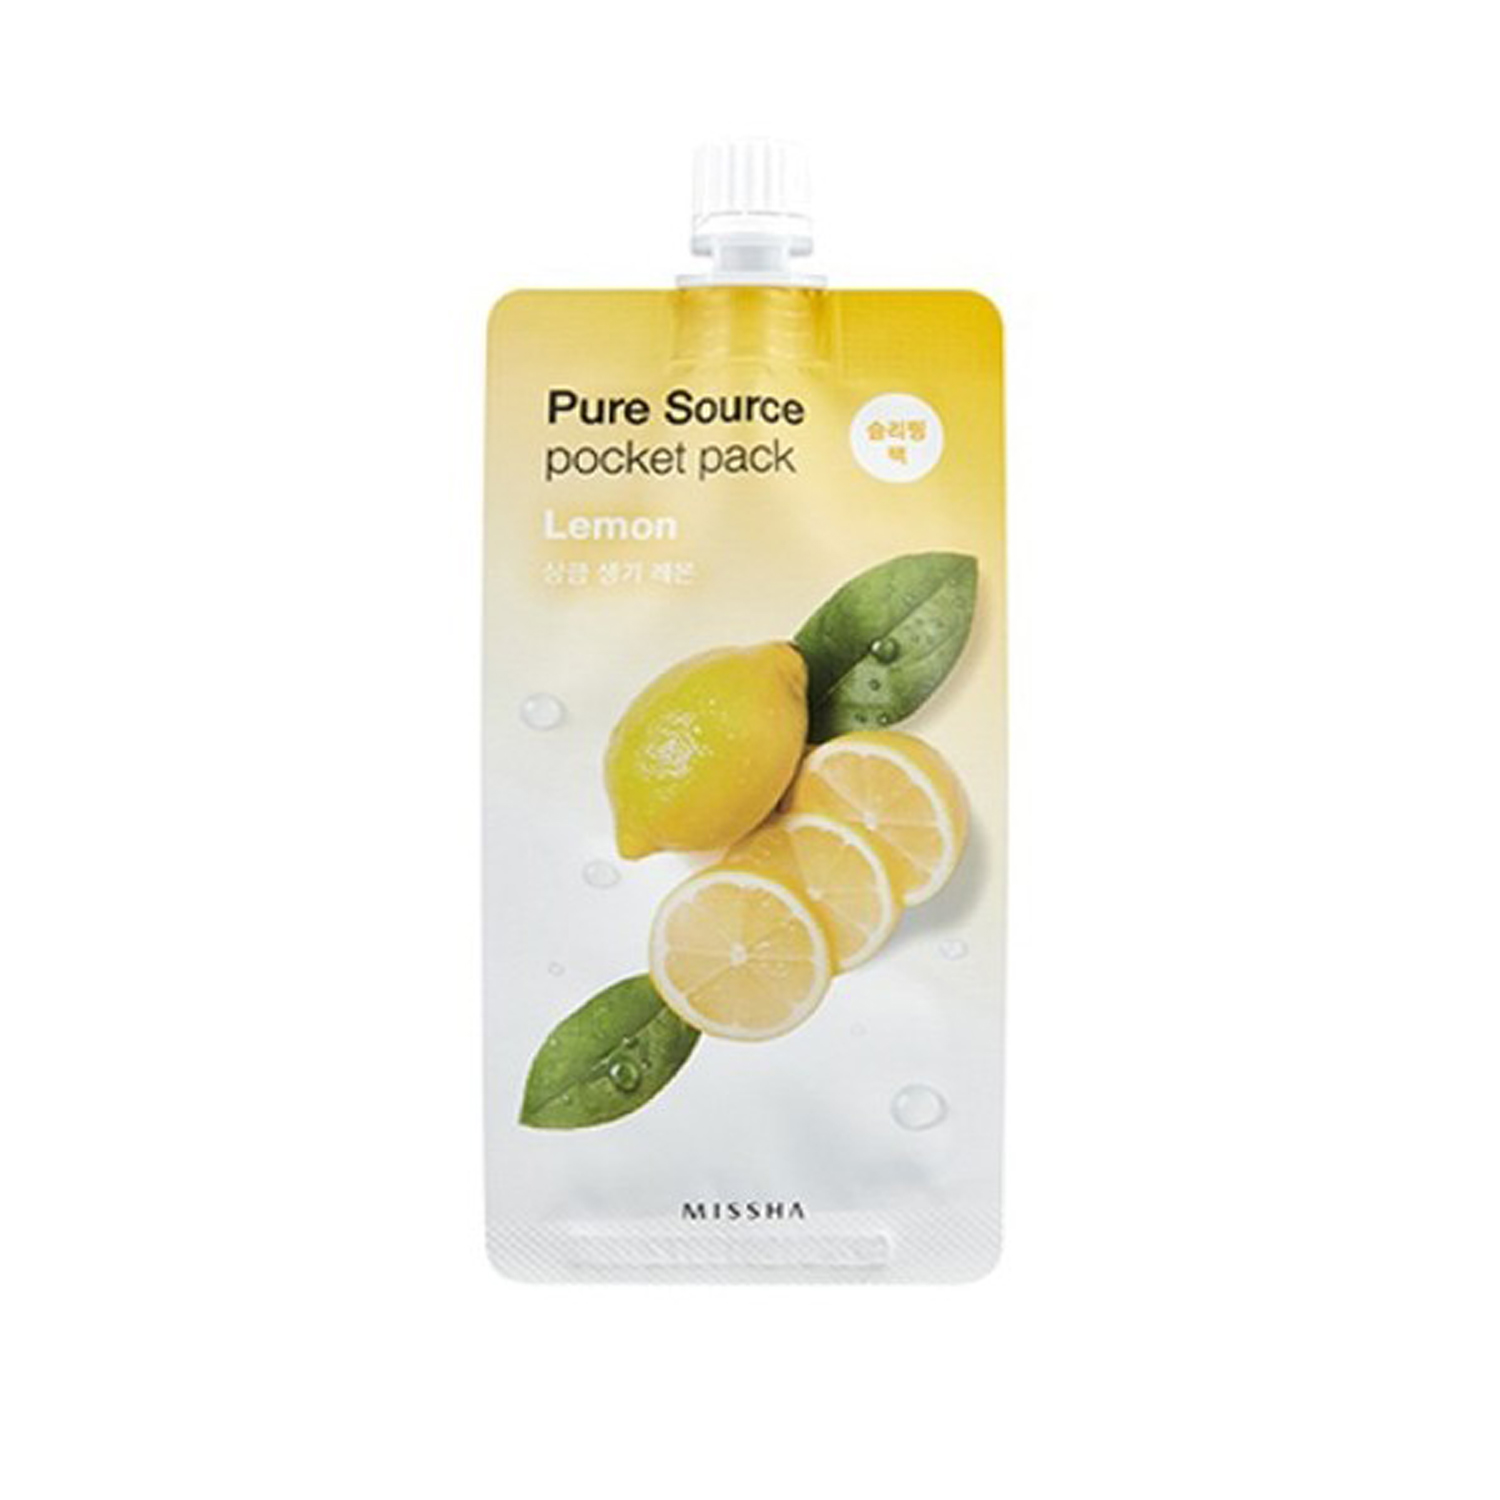 

Маски для лица Missha, Ночная маска для лица Missha Pure Source Pocket Pack Lemon с экстрактом лимона